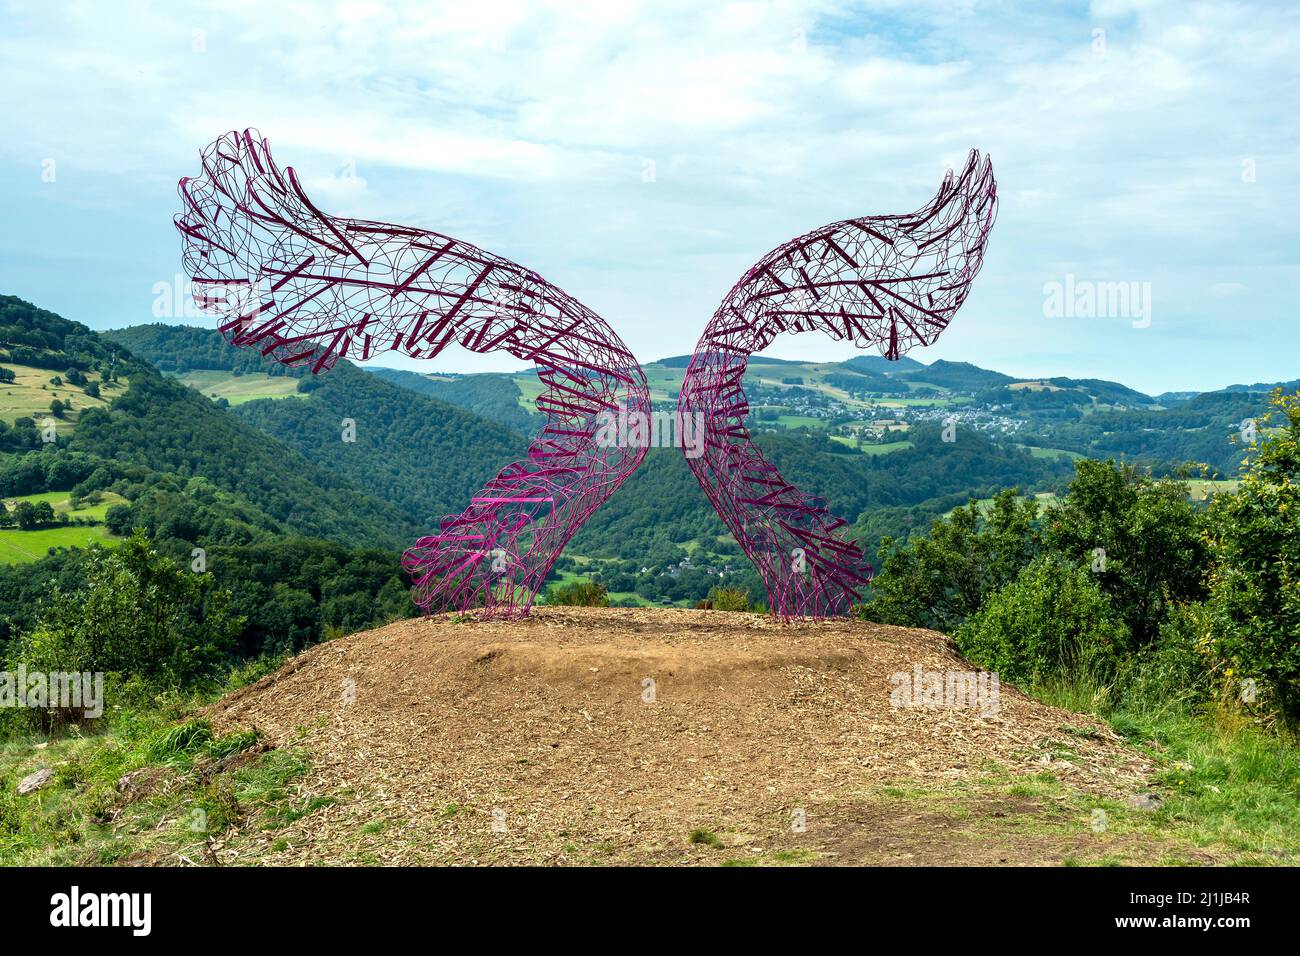 Orizzonti arti e natura in Sancy 2021. Credo di poter volare lavoro di Gleb Dusavitskiy, Puy de Dome, Auvergne Rhone Alpes, Francia Foto Stock